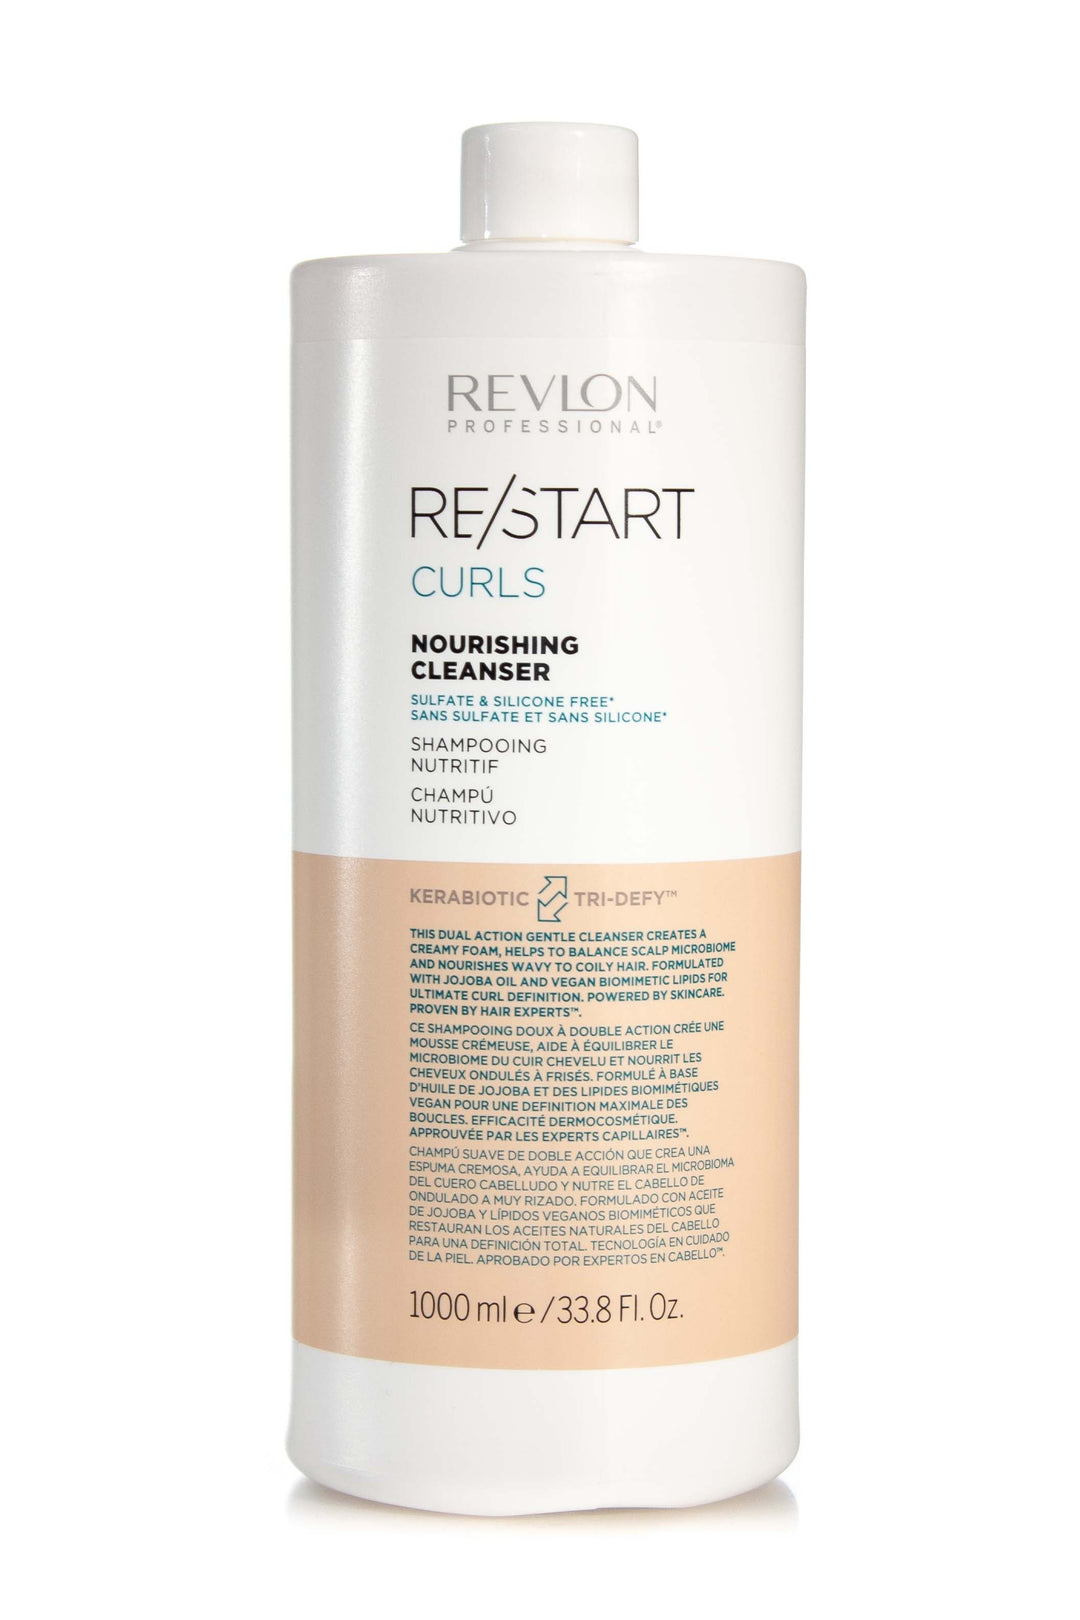 REVLON RESTART Curls Nourishing Cleanser | Various Sizes